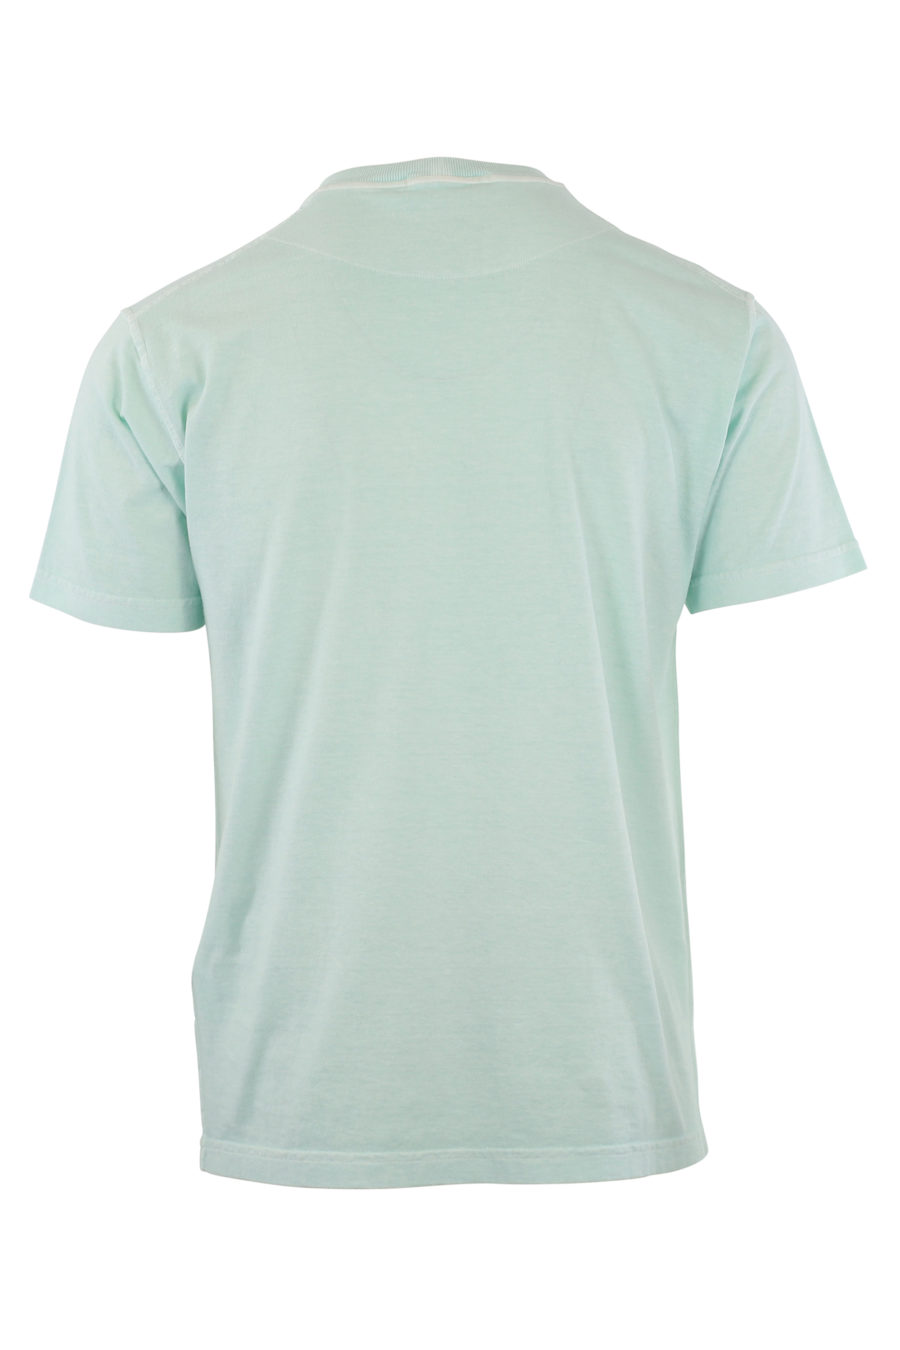 Camiseta azul con logo parche - IMG 9641